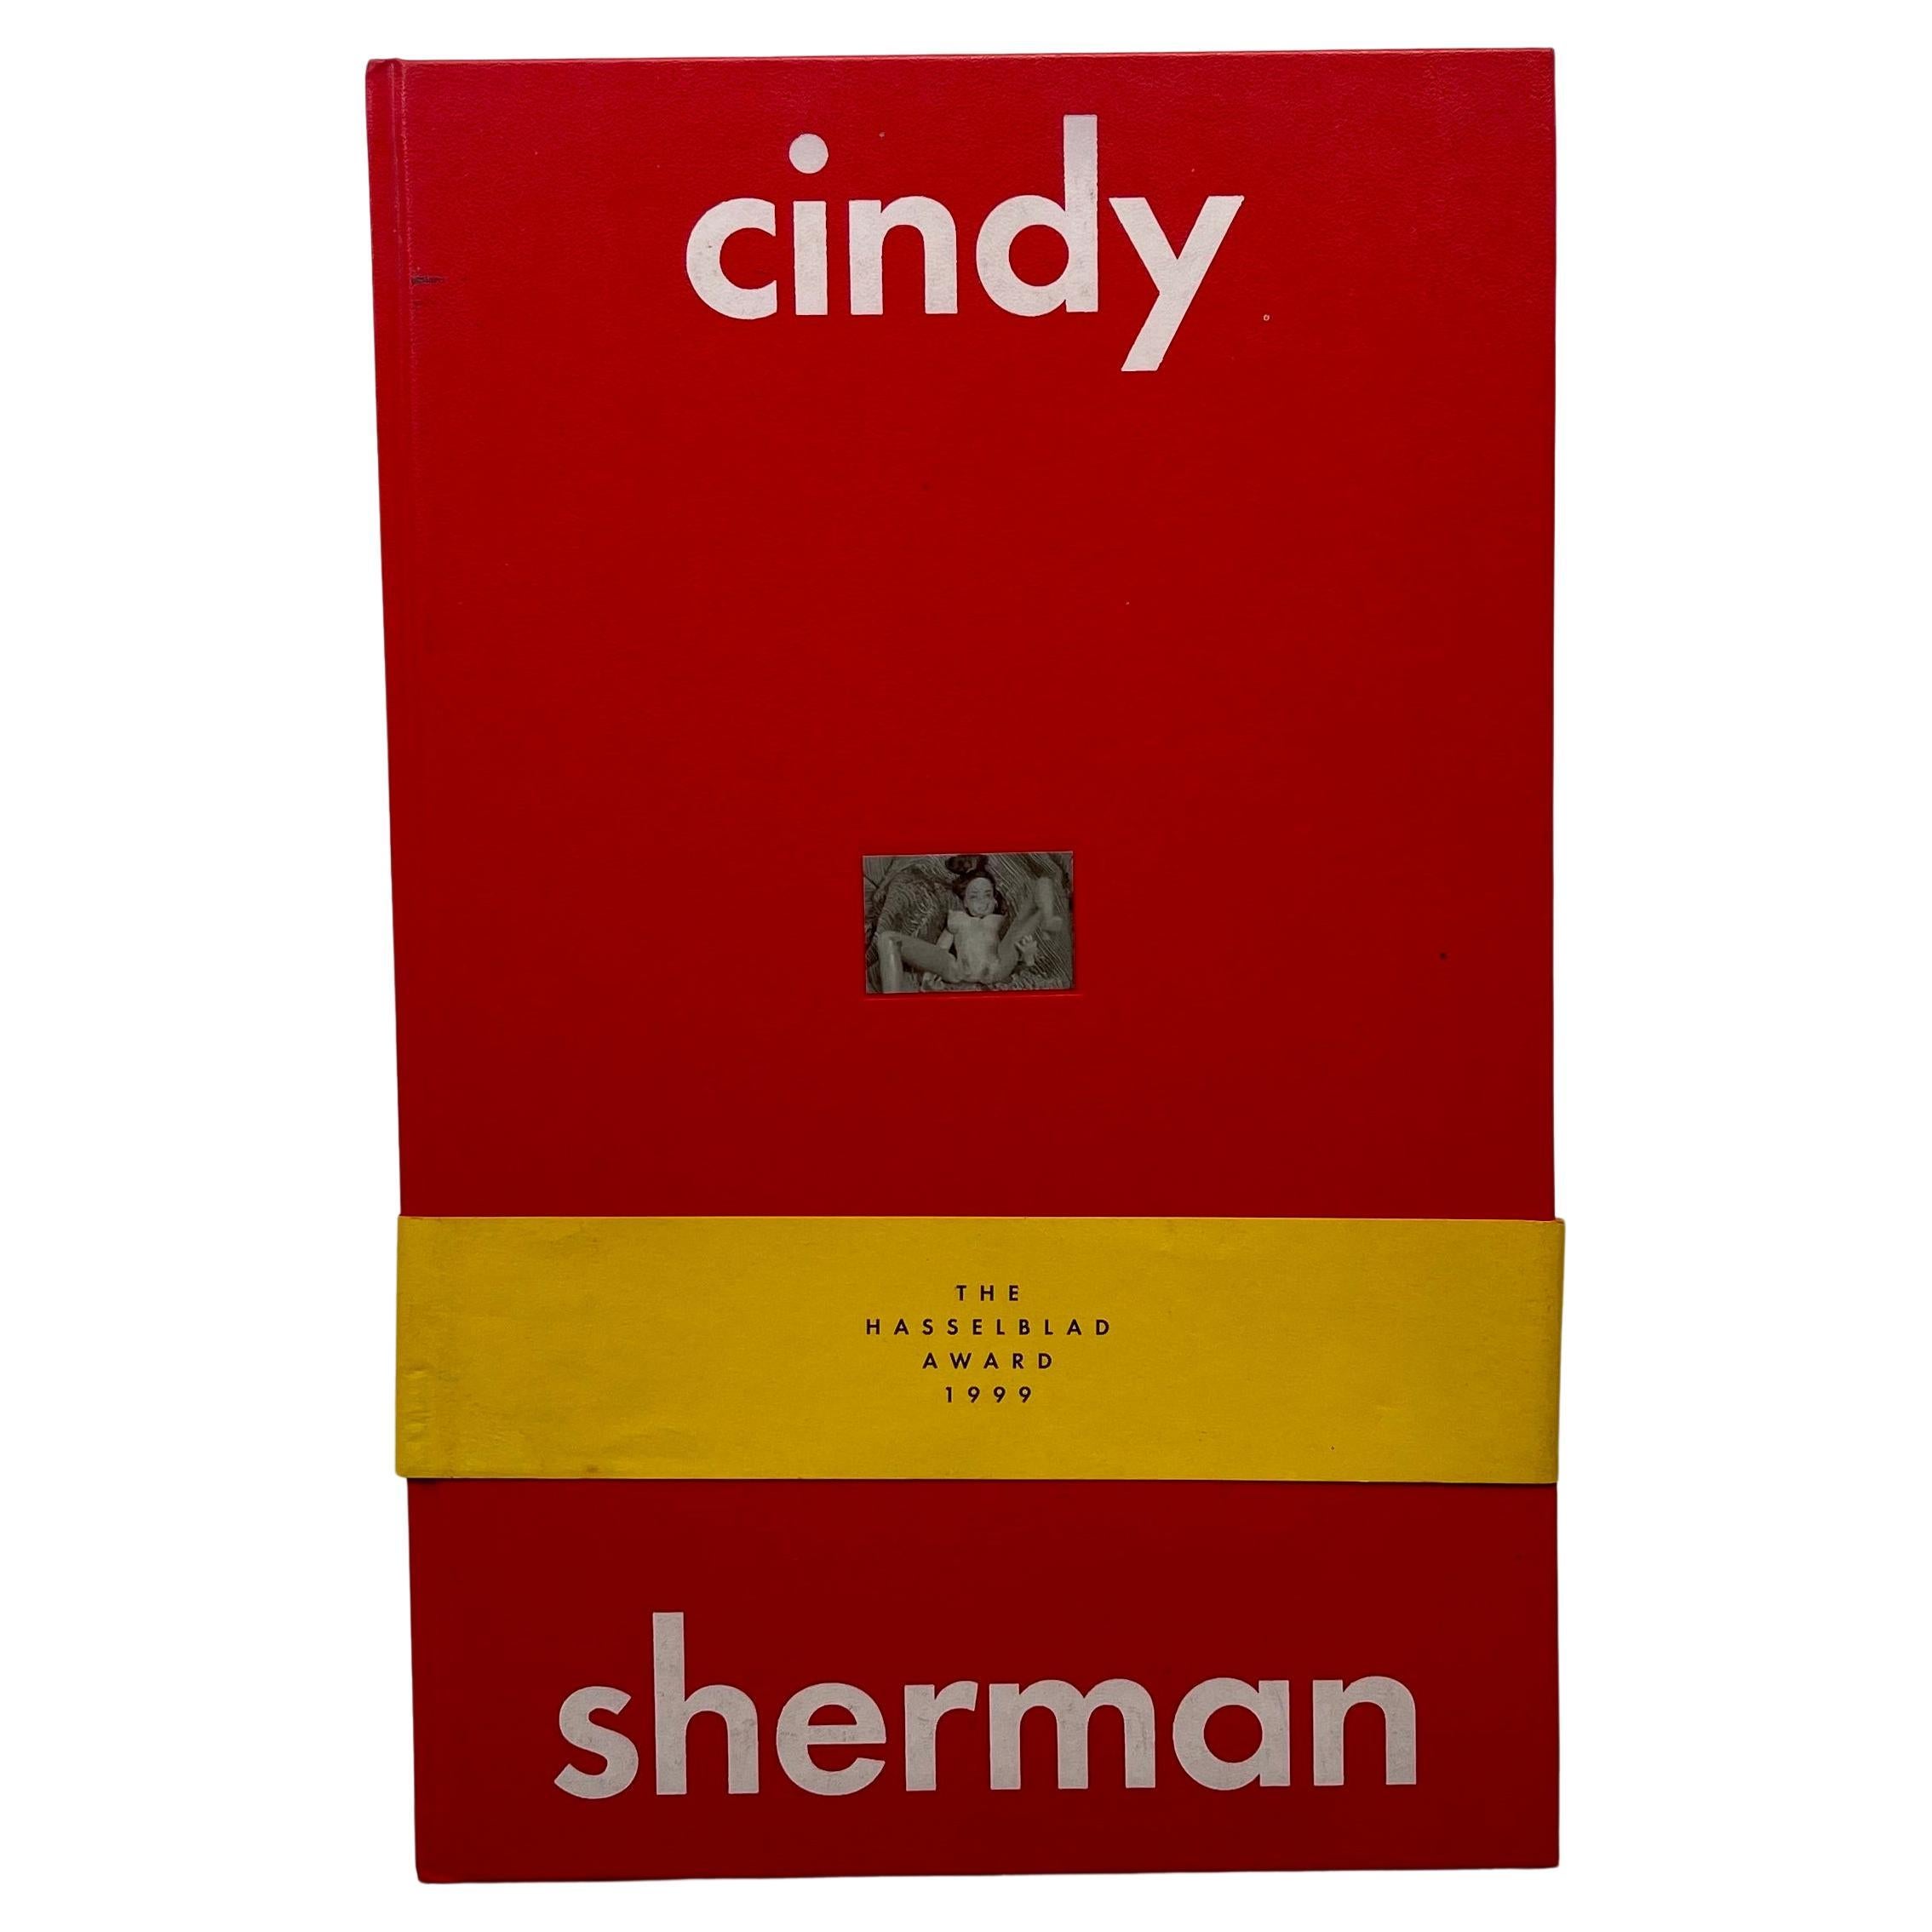 Le prix Hasselblad 1999 : Cindy Sherman - 1ère édition, Hasselblad Center, 2000